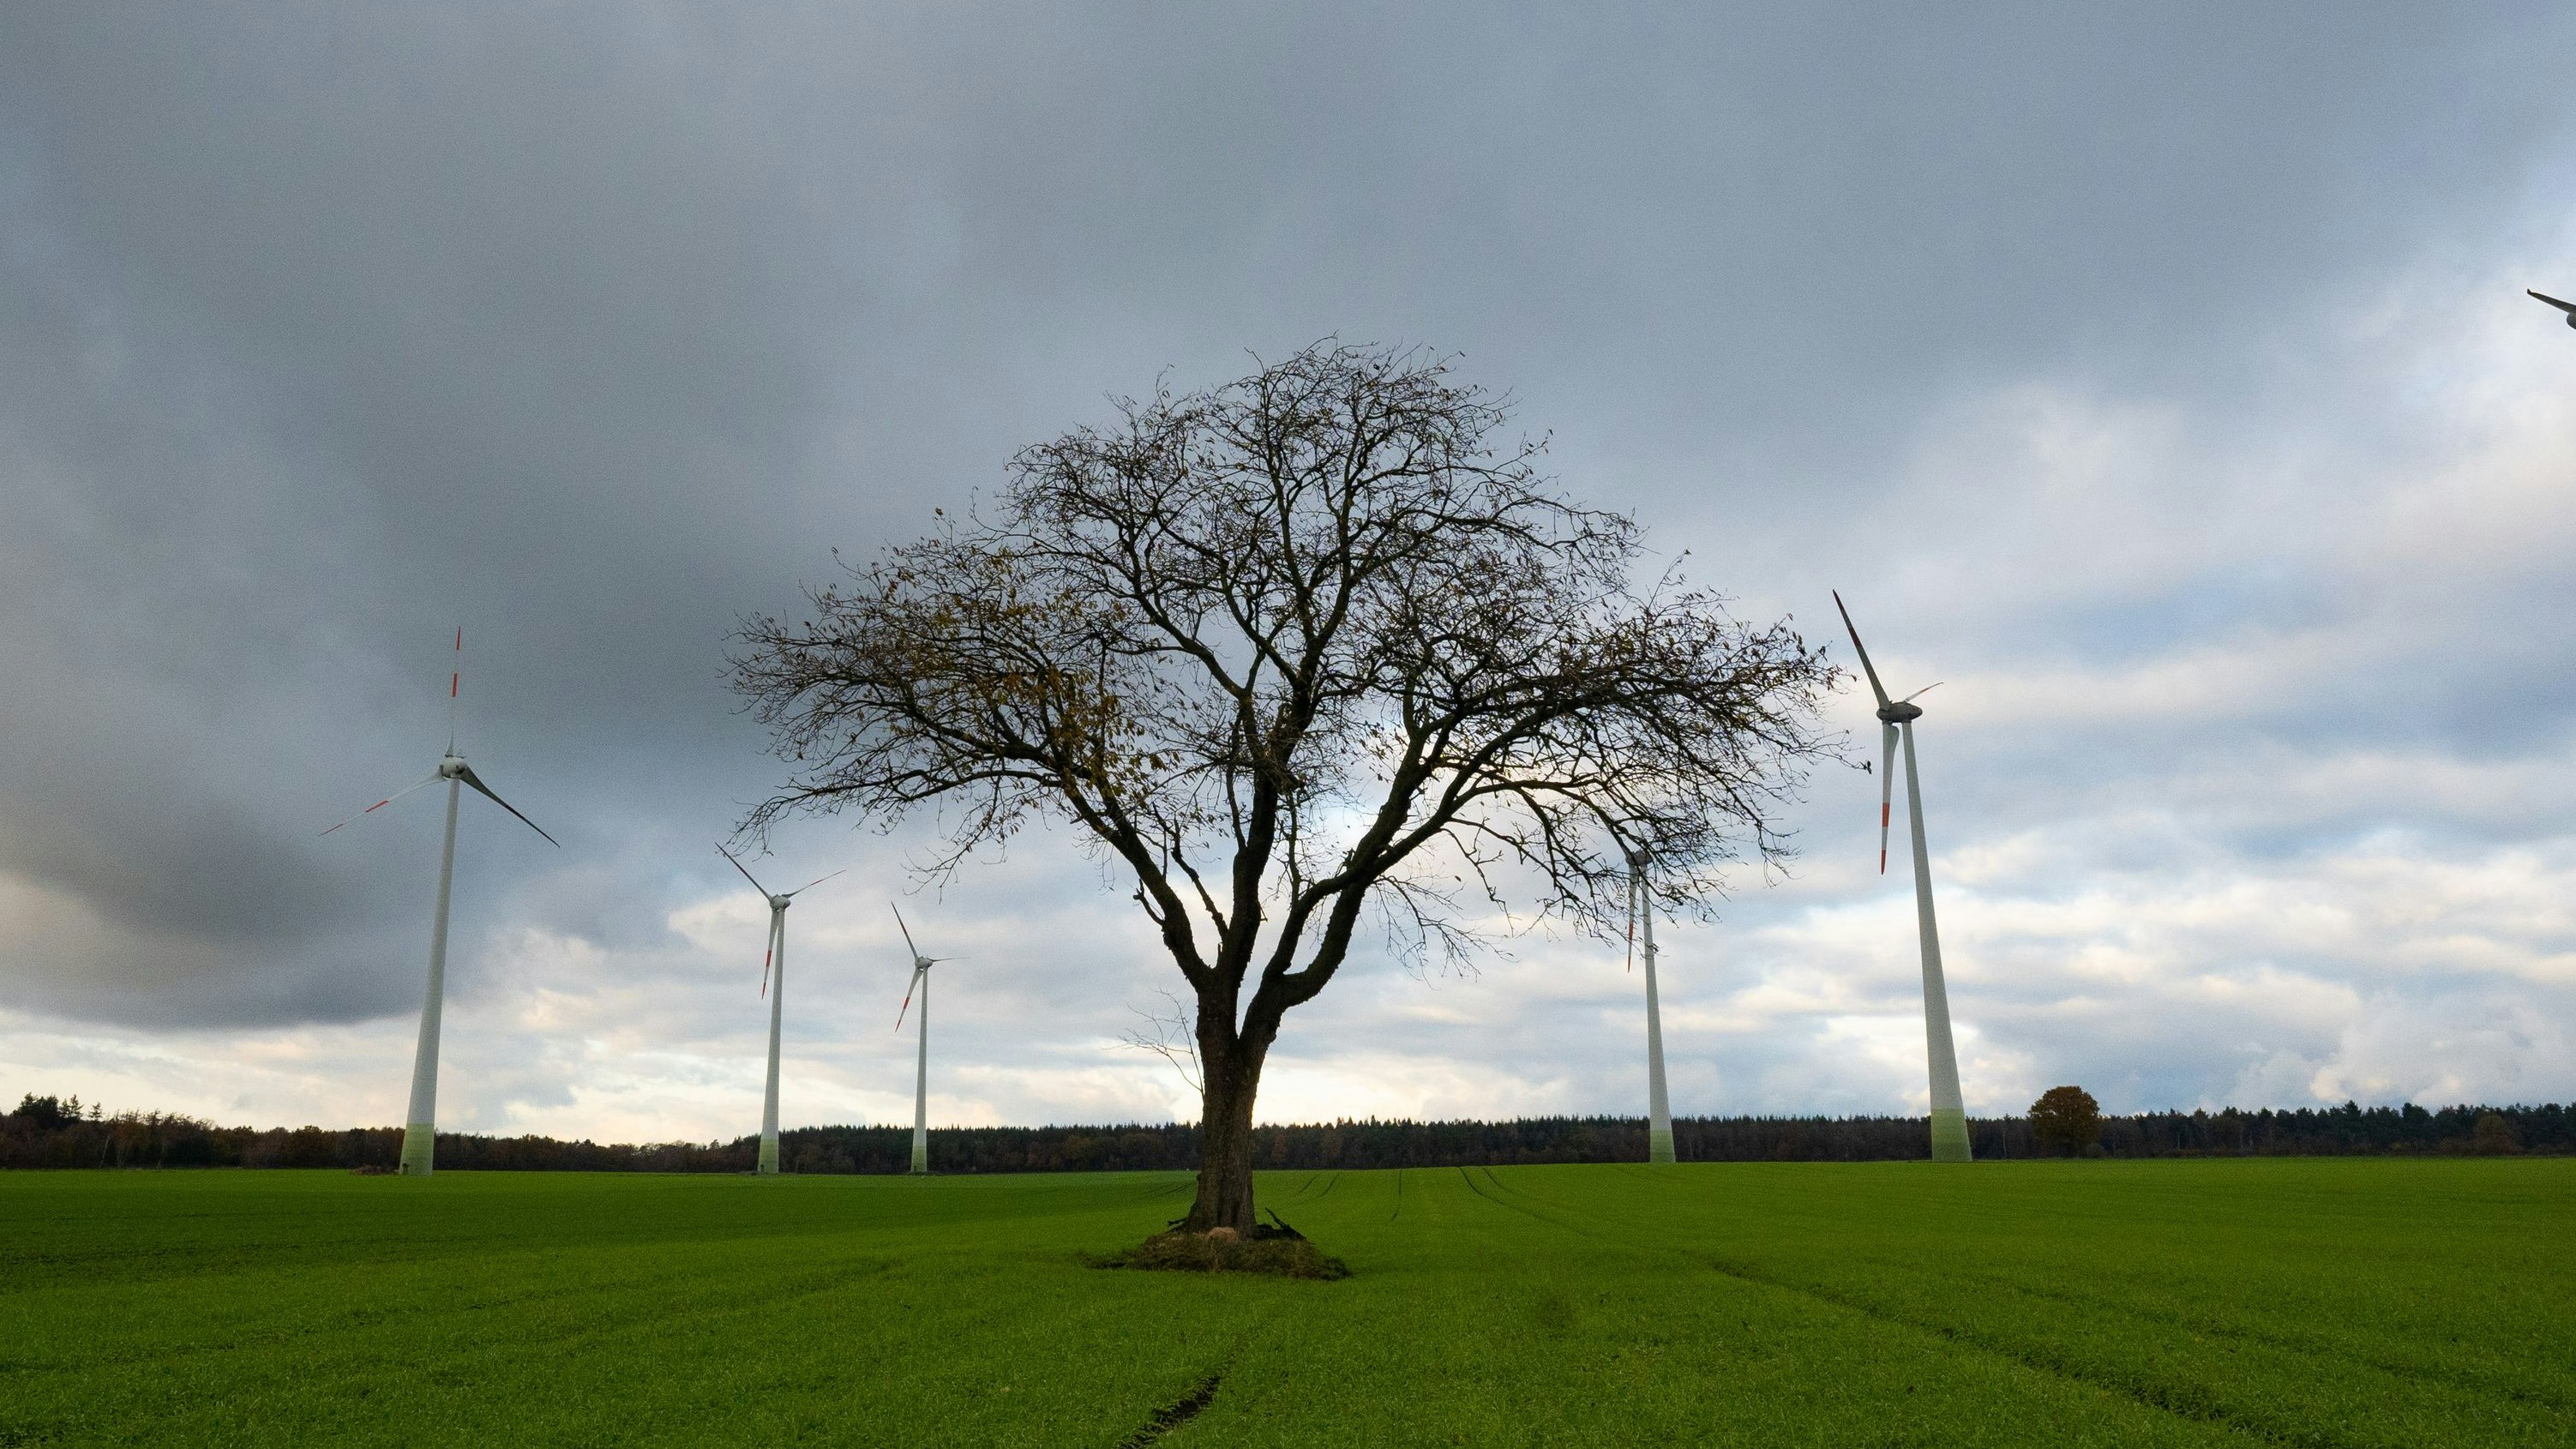 Kontrastprogramm: Flankiert von den riesigen Windrädern steht der Kirschbaum einsam auf dem Feld. Foto: Vorwerk